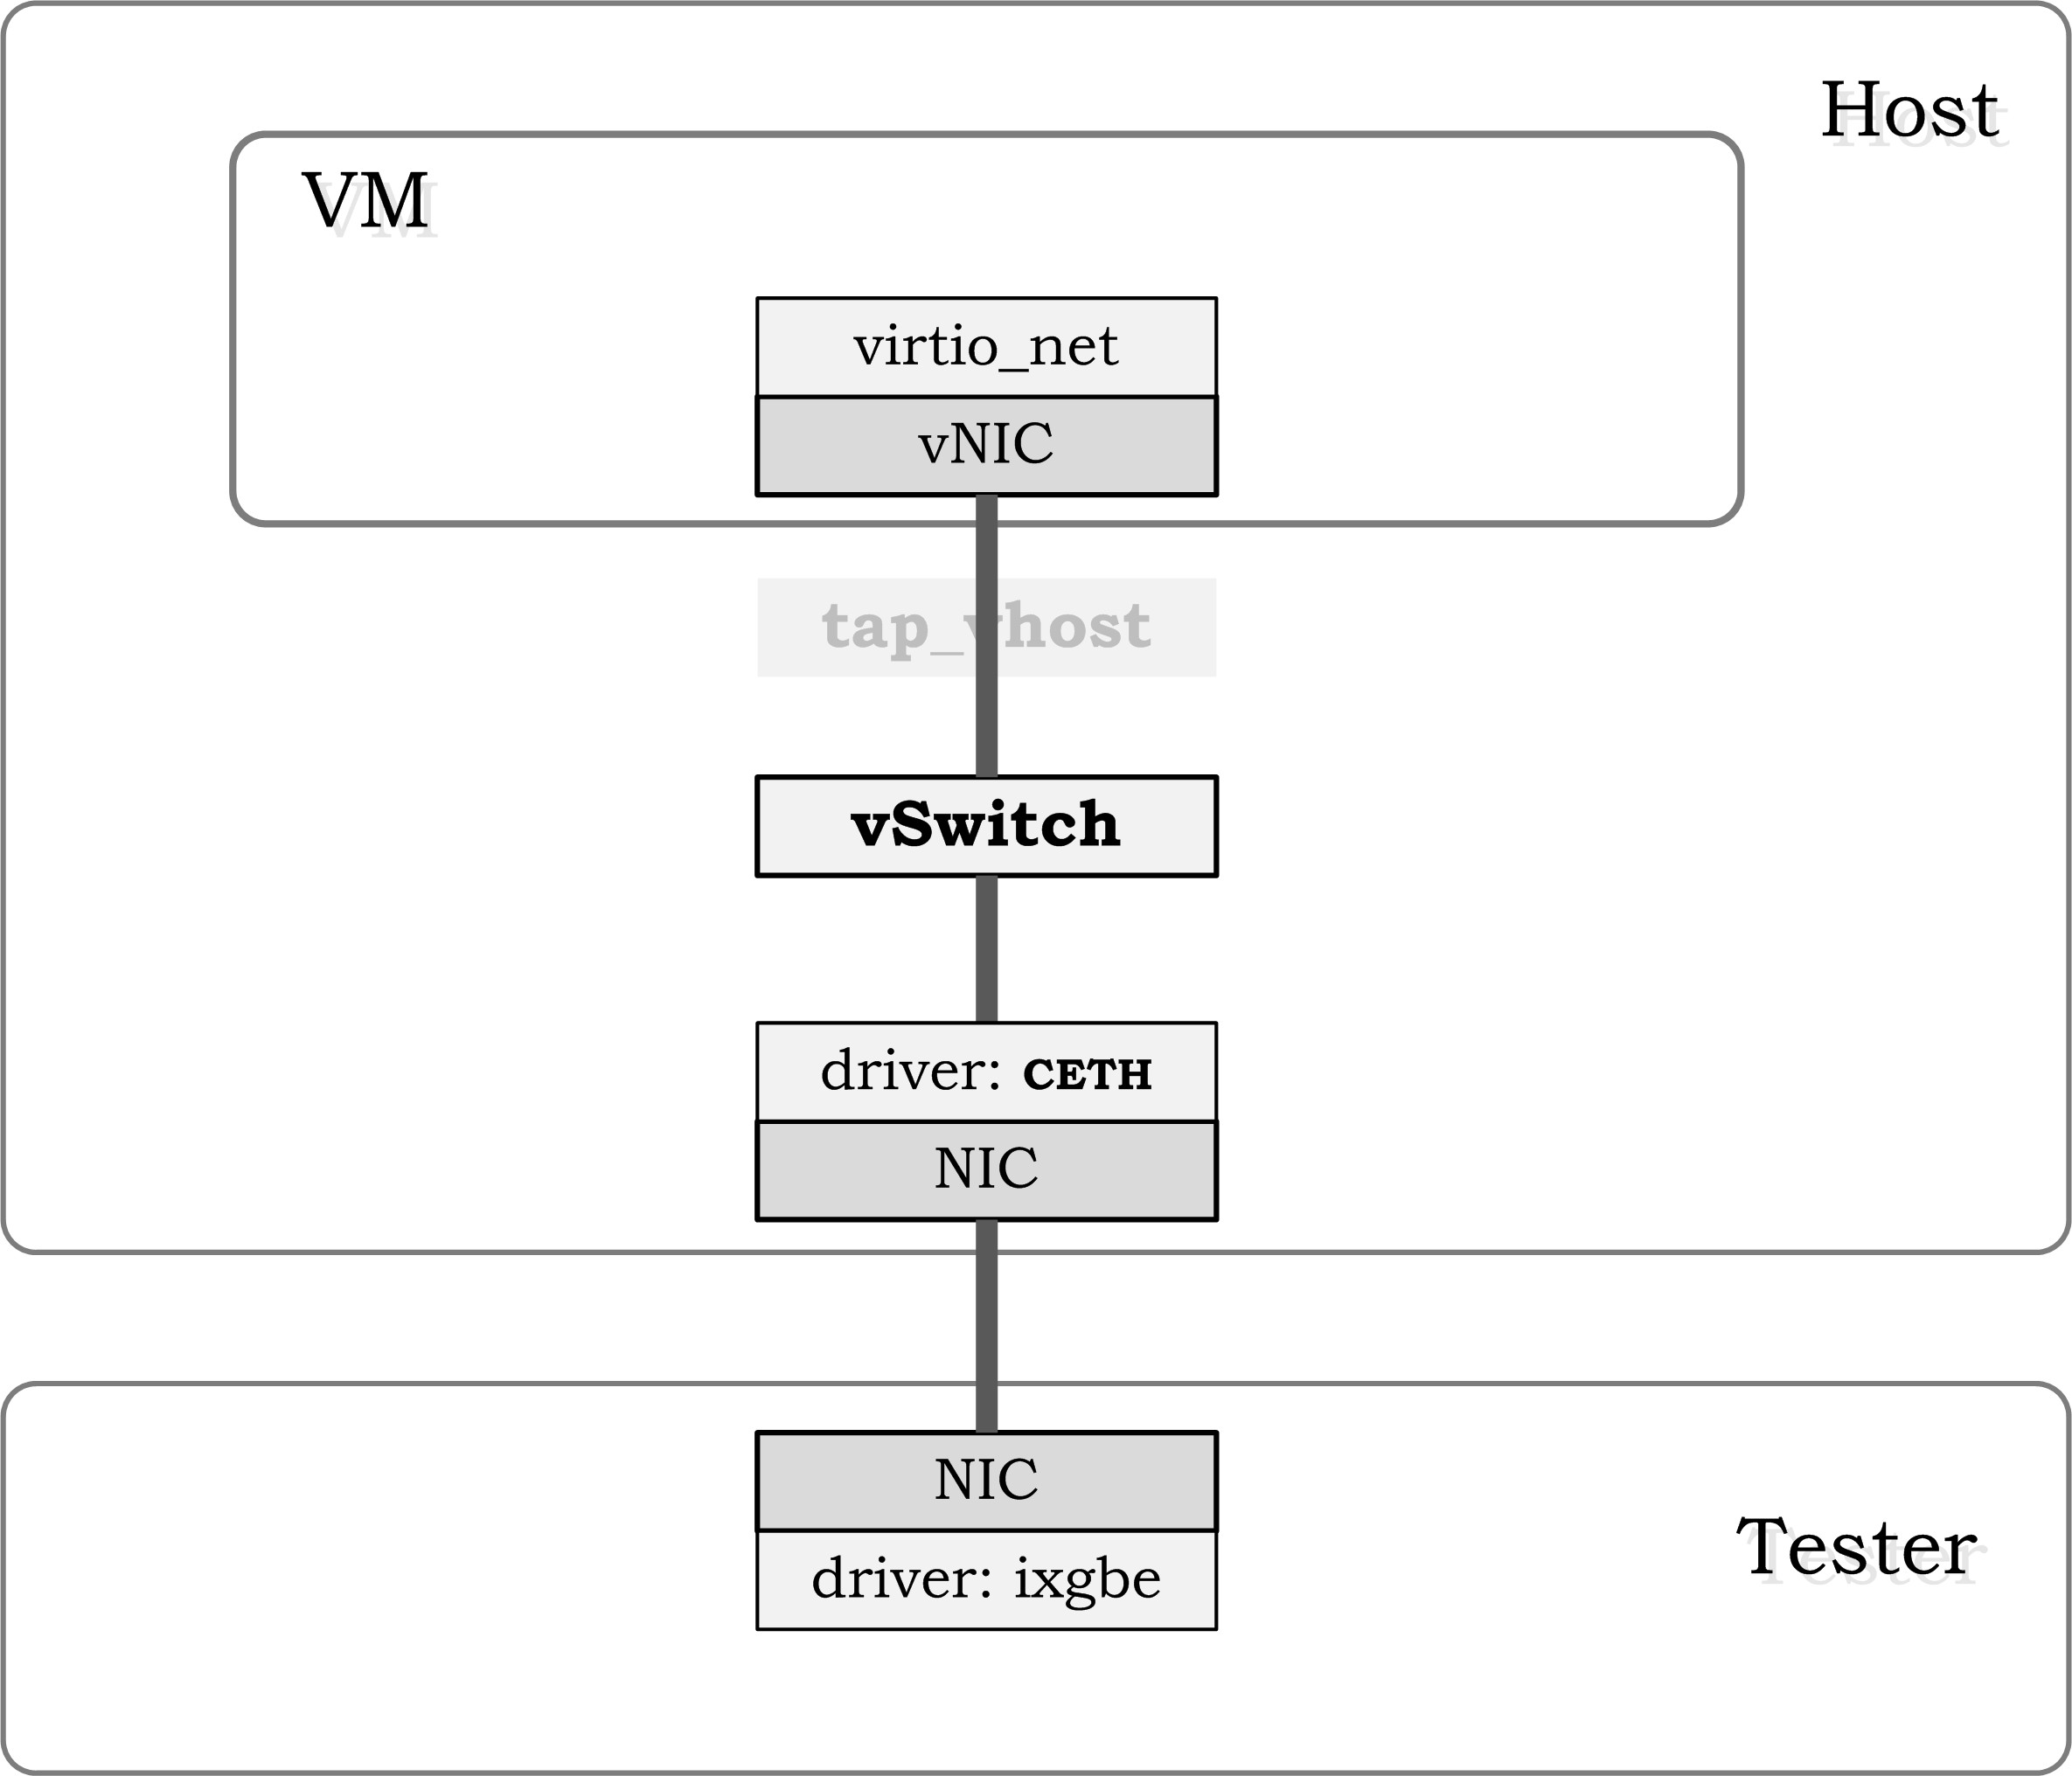 testsuites/vstf/vstf_scripts/vstf/controller/res/deployment/Ti.jpg